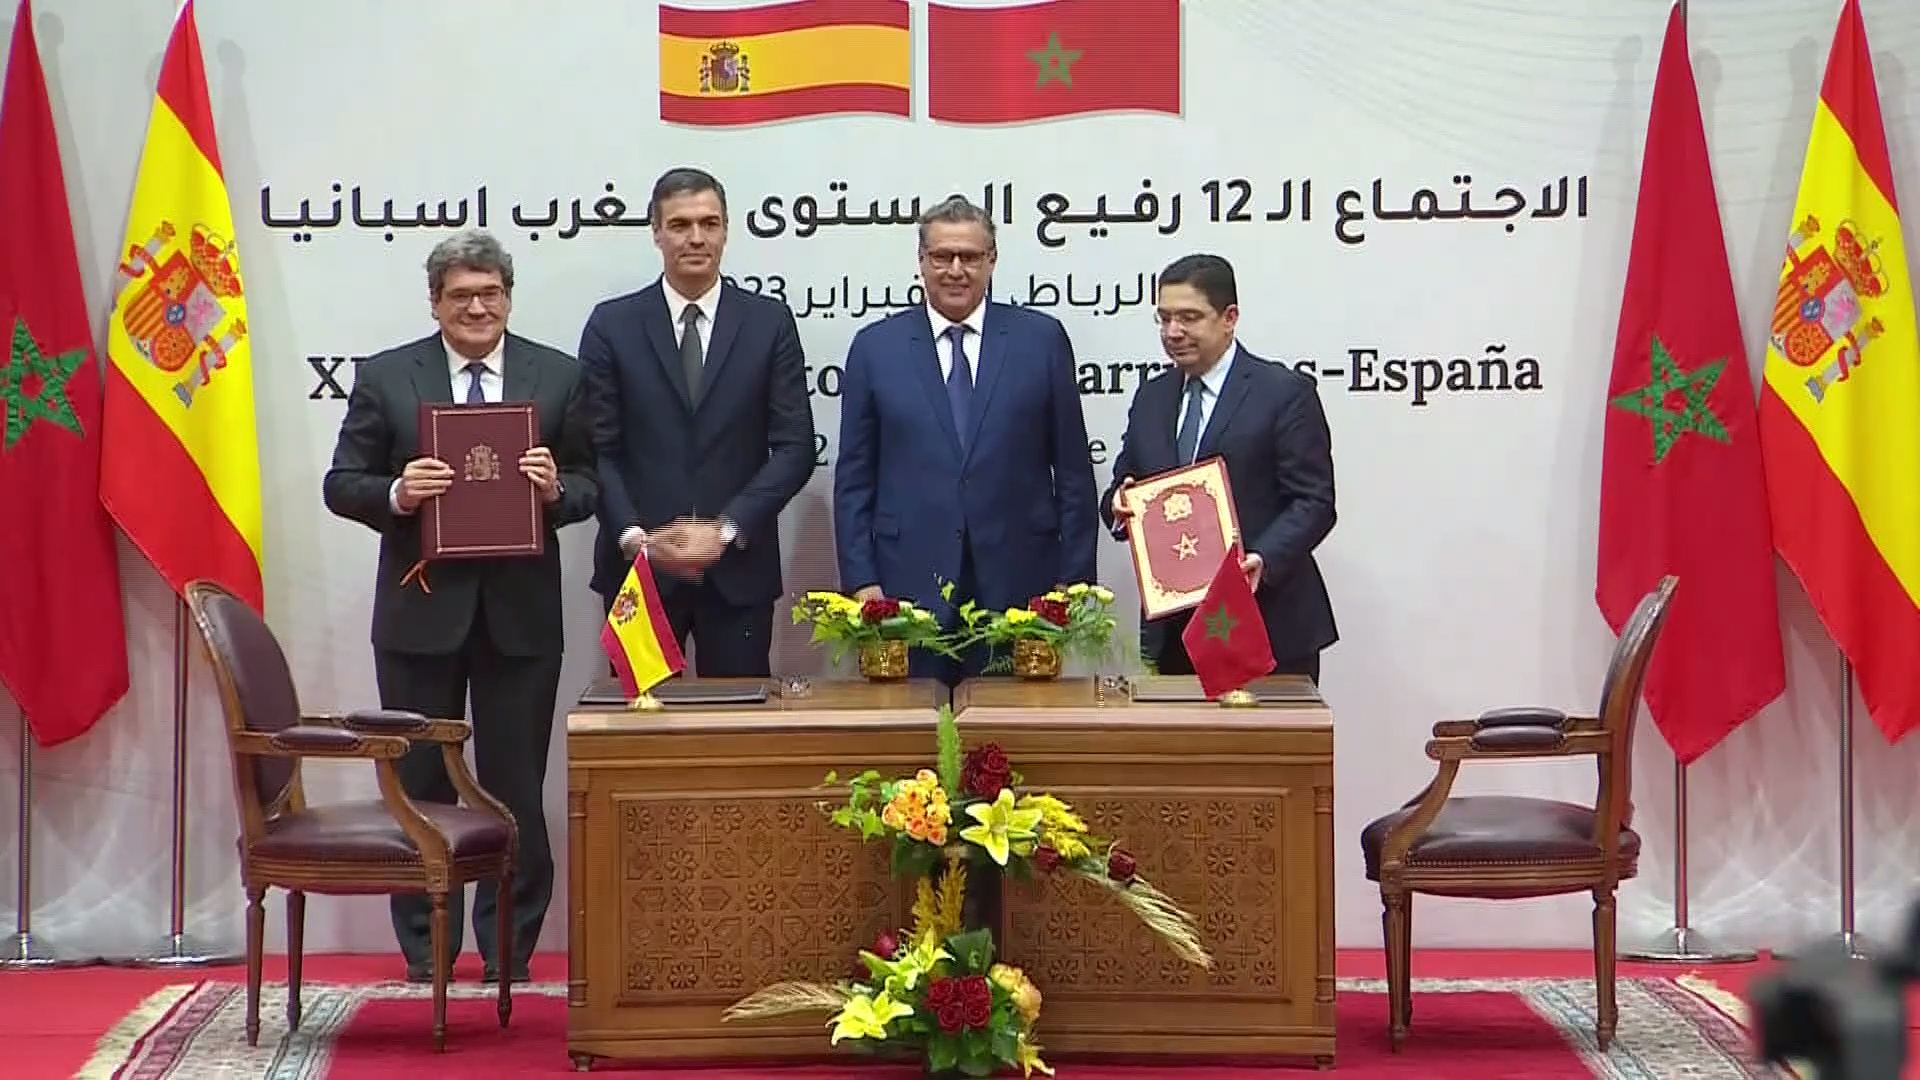 El ministro Escrivá y el presidente Pedro Sánchez junto con los mandatarios marroquíes